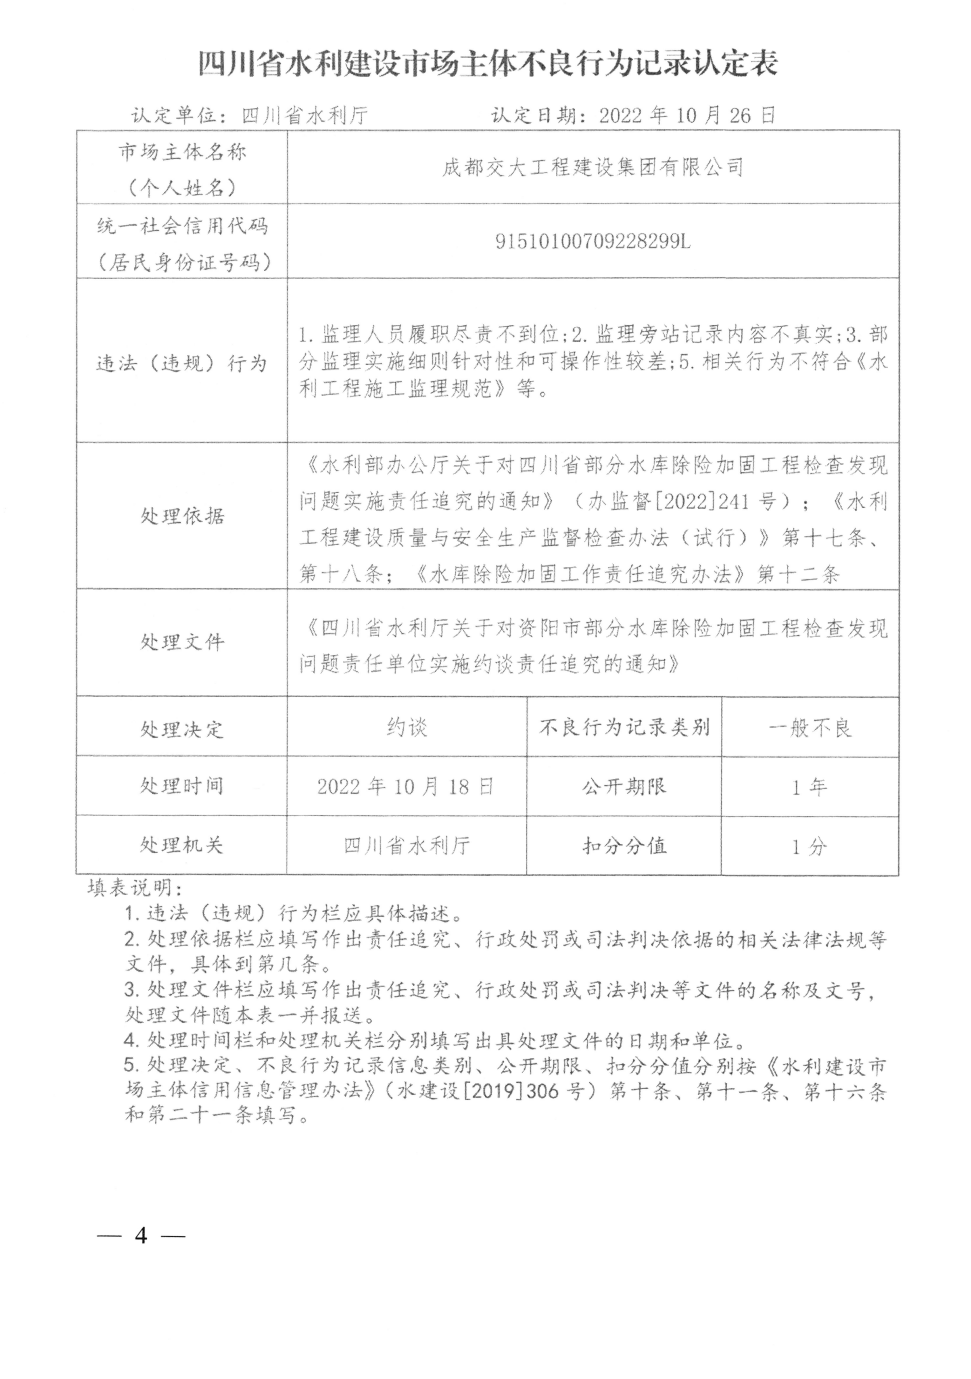 四川省水利建设市场主体不良行为记录认定表（成都交大工程建设集团有限公司）.png